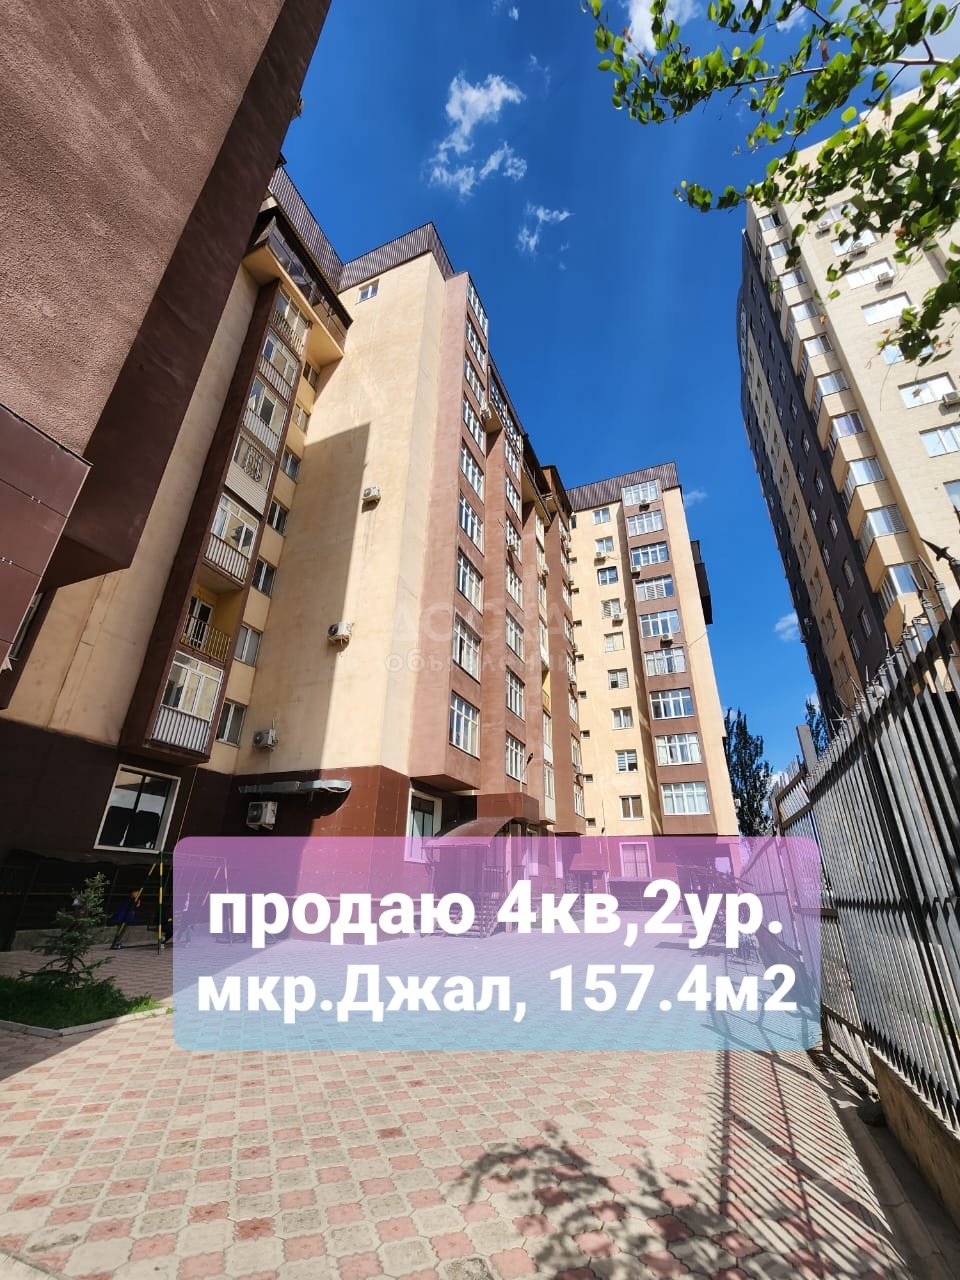 Продаю 4-комнатную квартиру, 157кв. м., этаж - 9/10, мкр. Джал, Тыналиева.